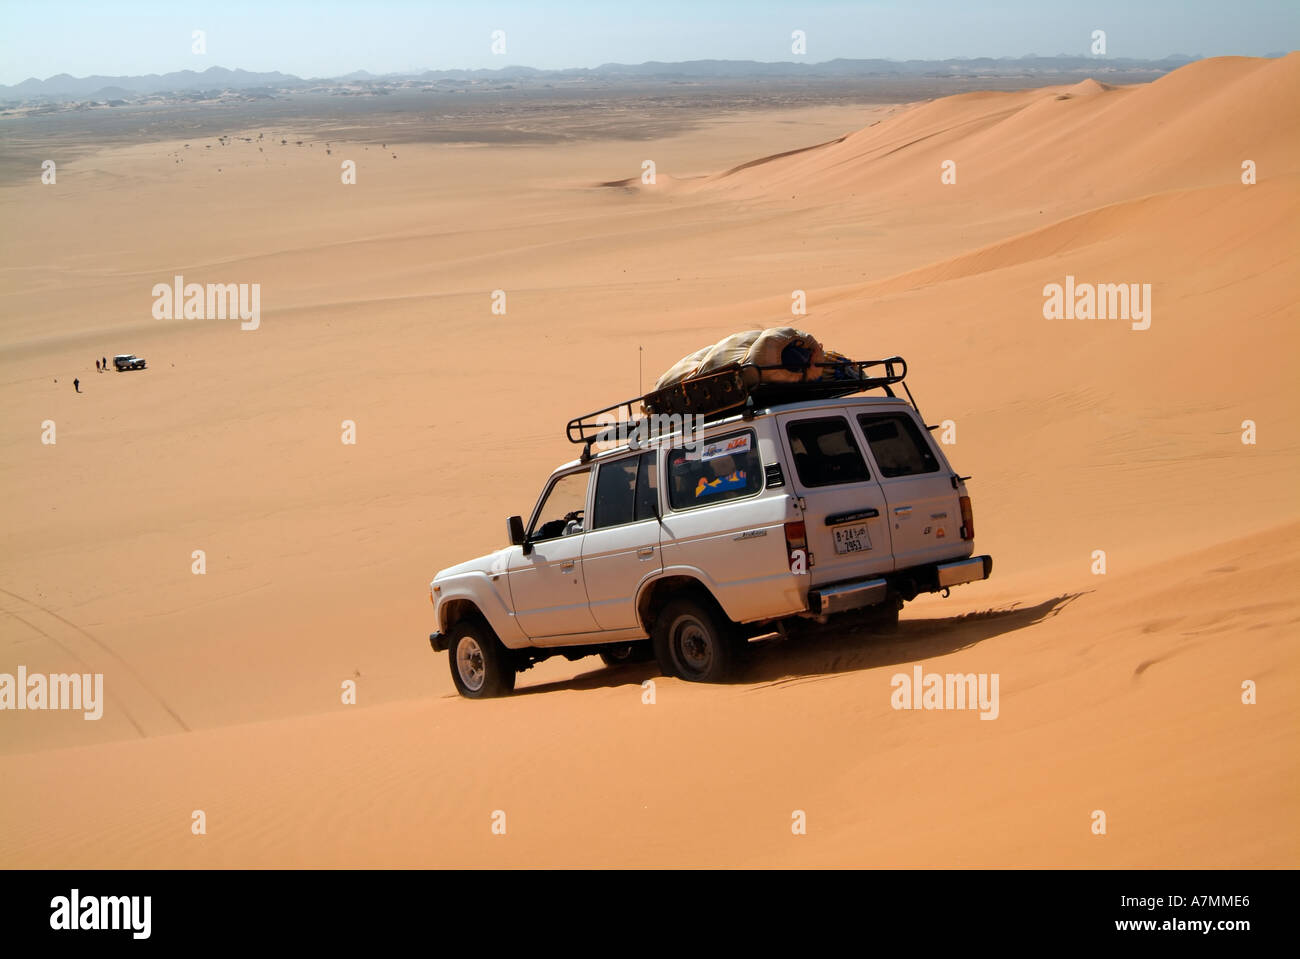 Jeep safari, Idehan Murzuq sand sea, Sahara Desert, Libya Stock Photo